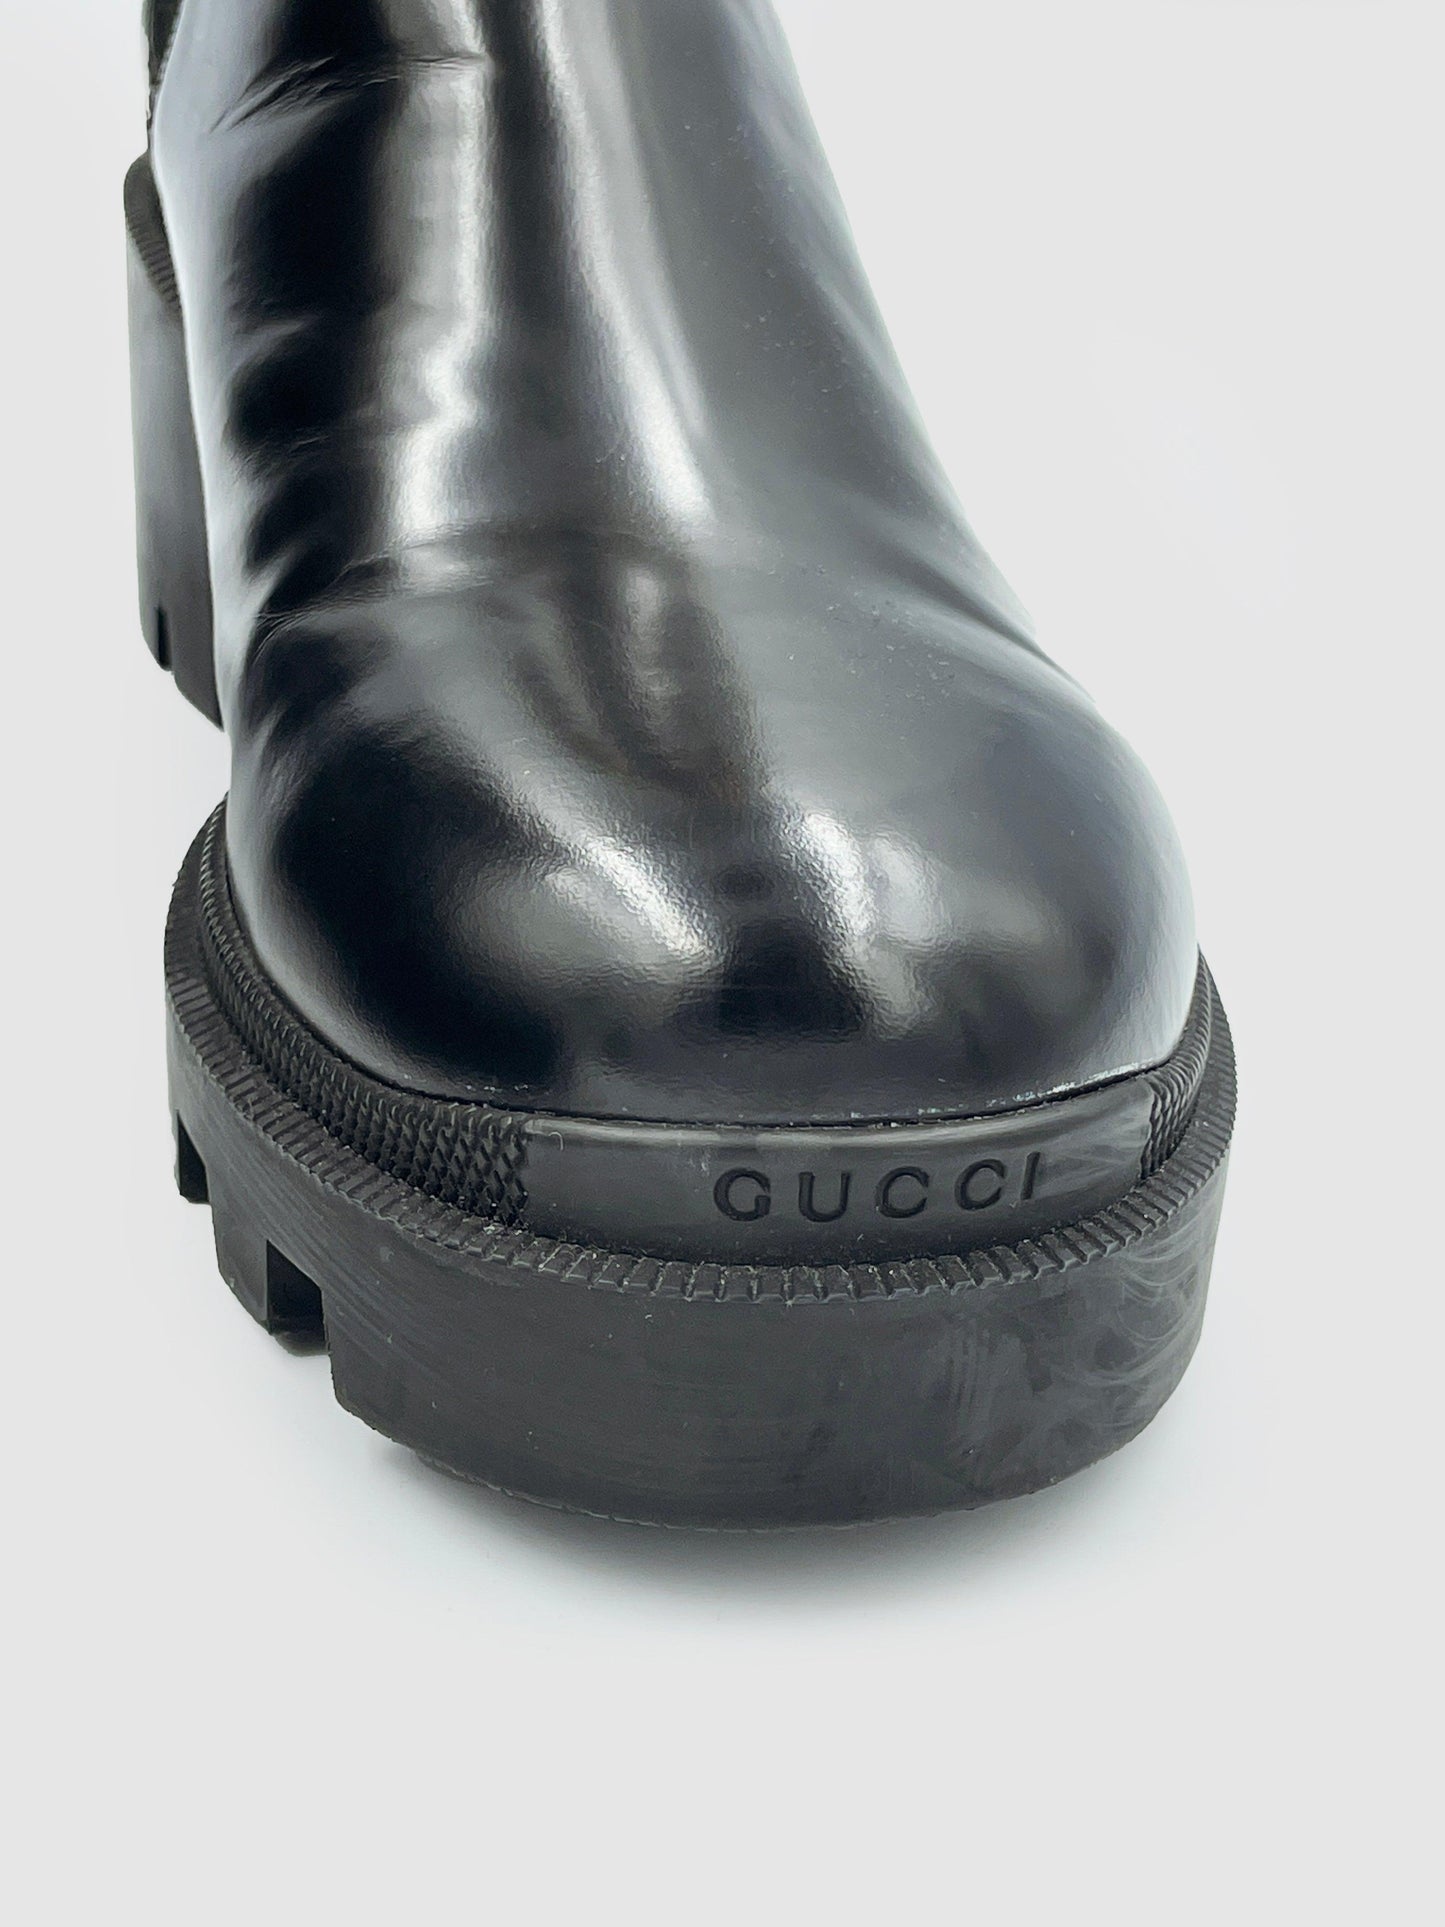 Gucci - Size 41 - Second Nature Boutique